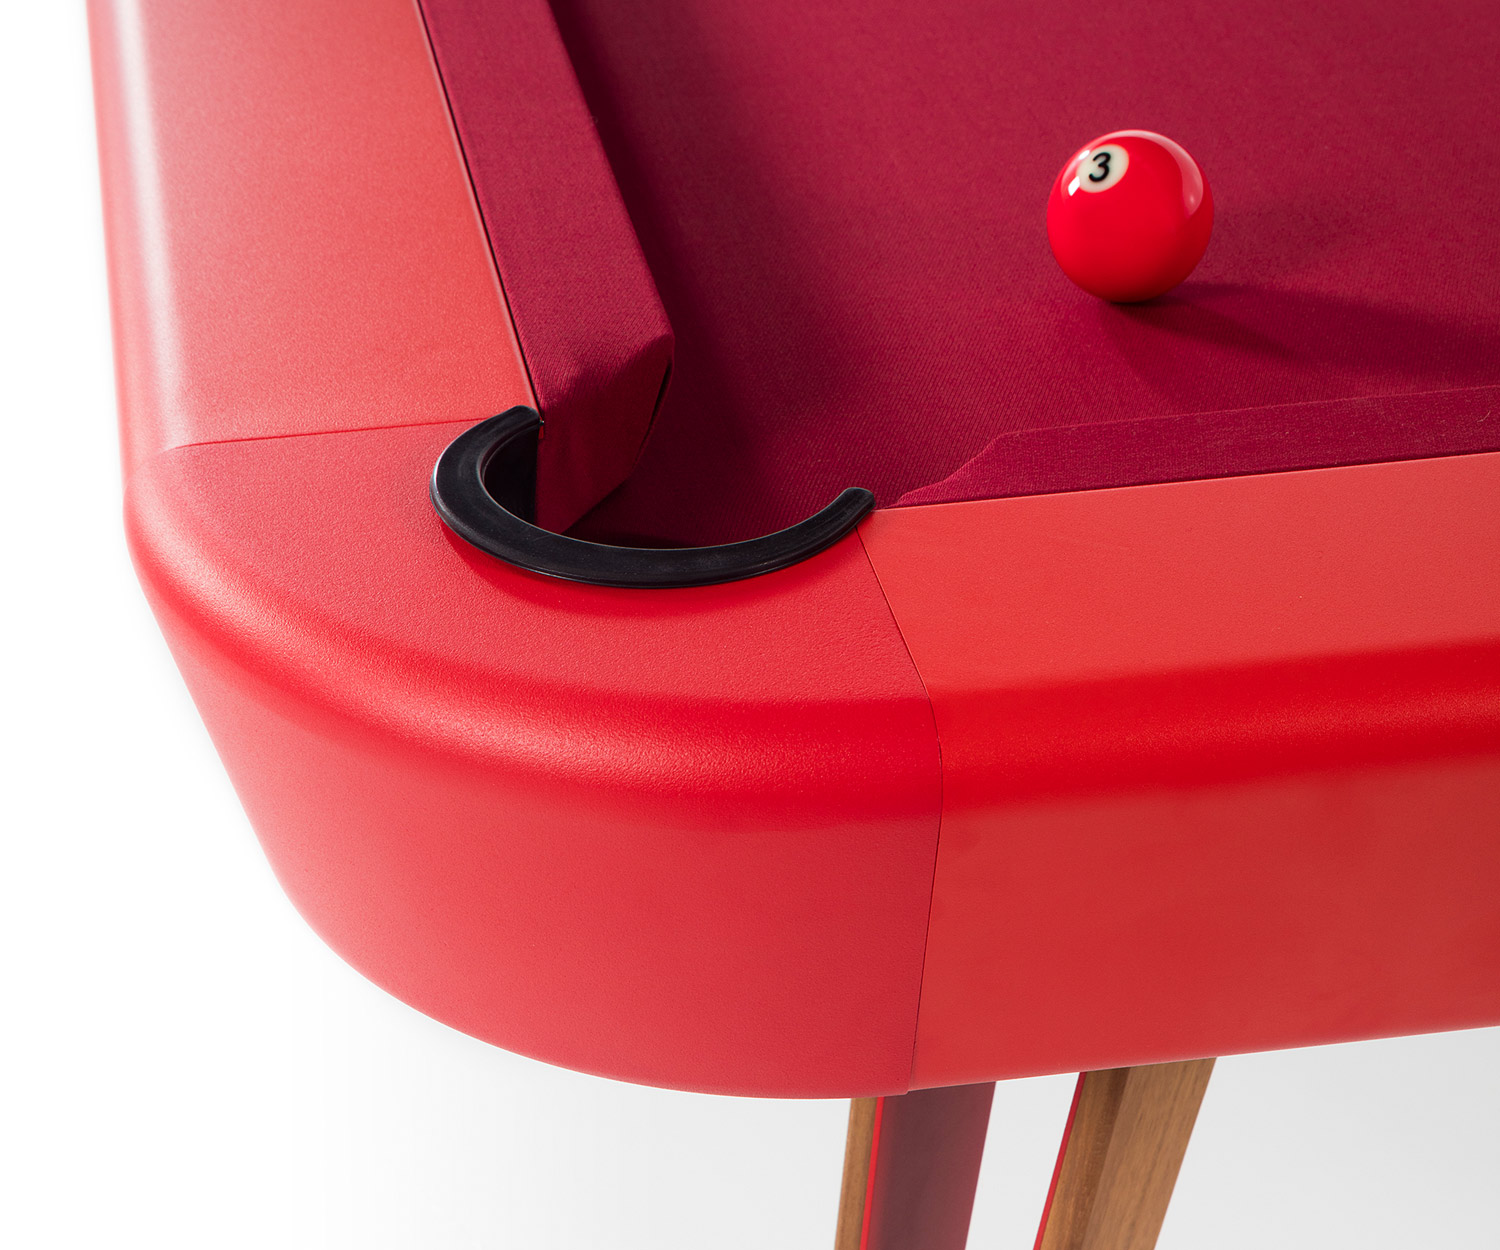 RS Barcelona Table design billard en détail revêtement rouge peinture rouge